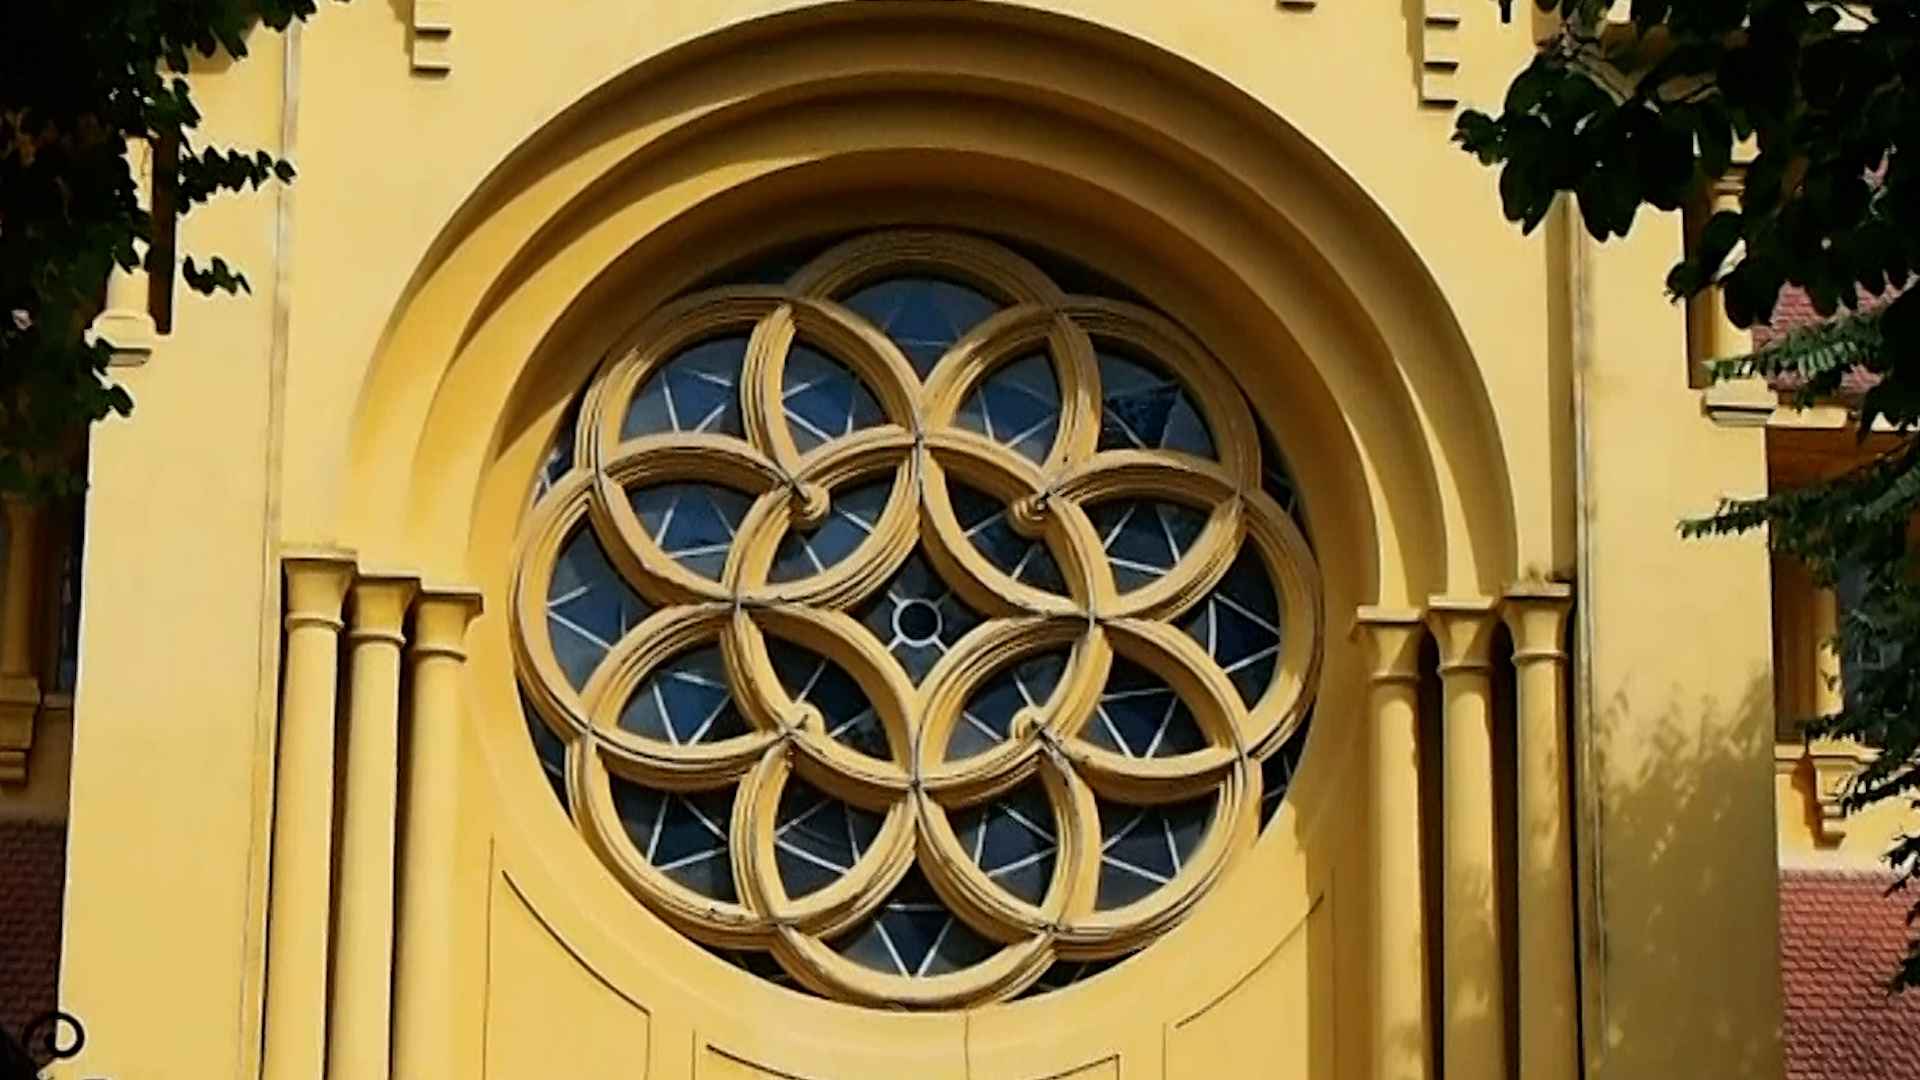 Cửa sổ hoa hồng, mảng lấy ánh sáng vào bên trong nhà thờ. Đây là một trong hai công trinh do kiến trúc sư Ernest Hébrard thiết kế duy nhất tại Hà Nội theo kiến trúc Đông Dương.